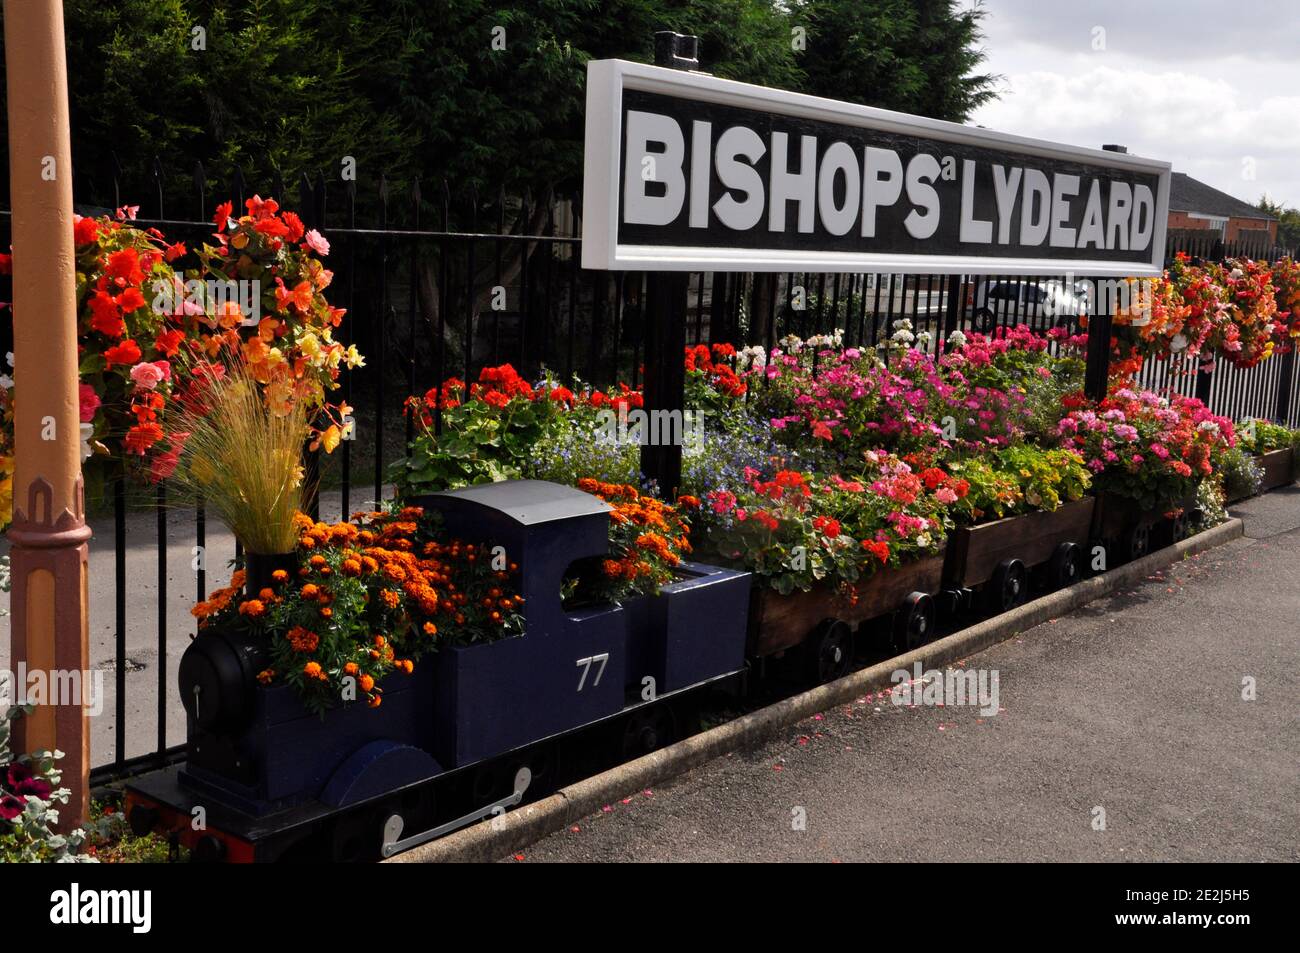 Colorata mostra di fiori estivi in un treno modello sulla stazione Bishops Lydiard sulla ferrovia a vapore del Somerset Ovest. Somerset.UK Foto Stock